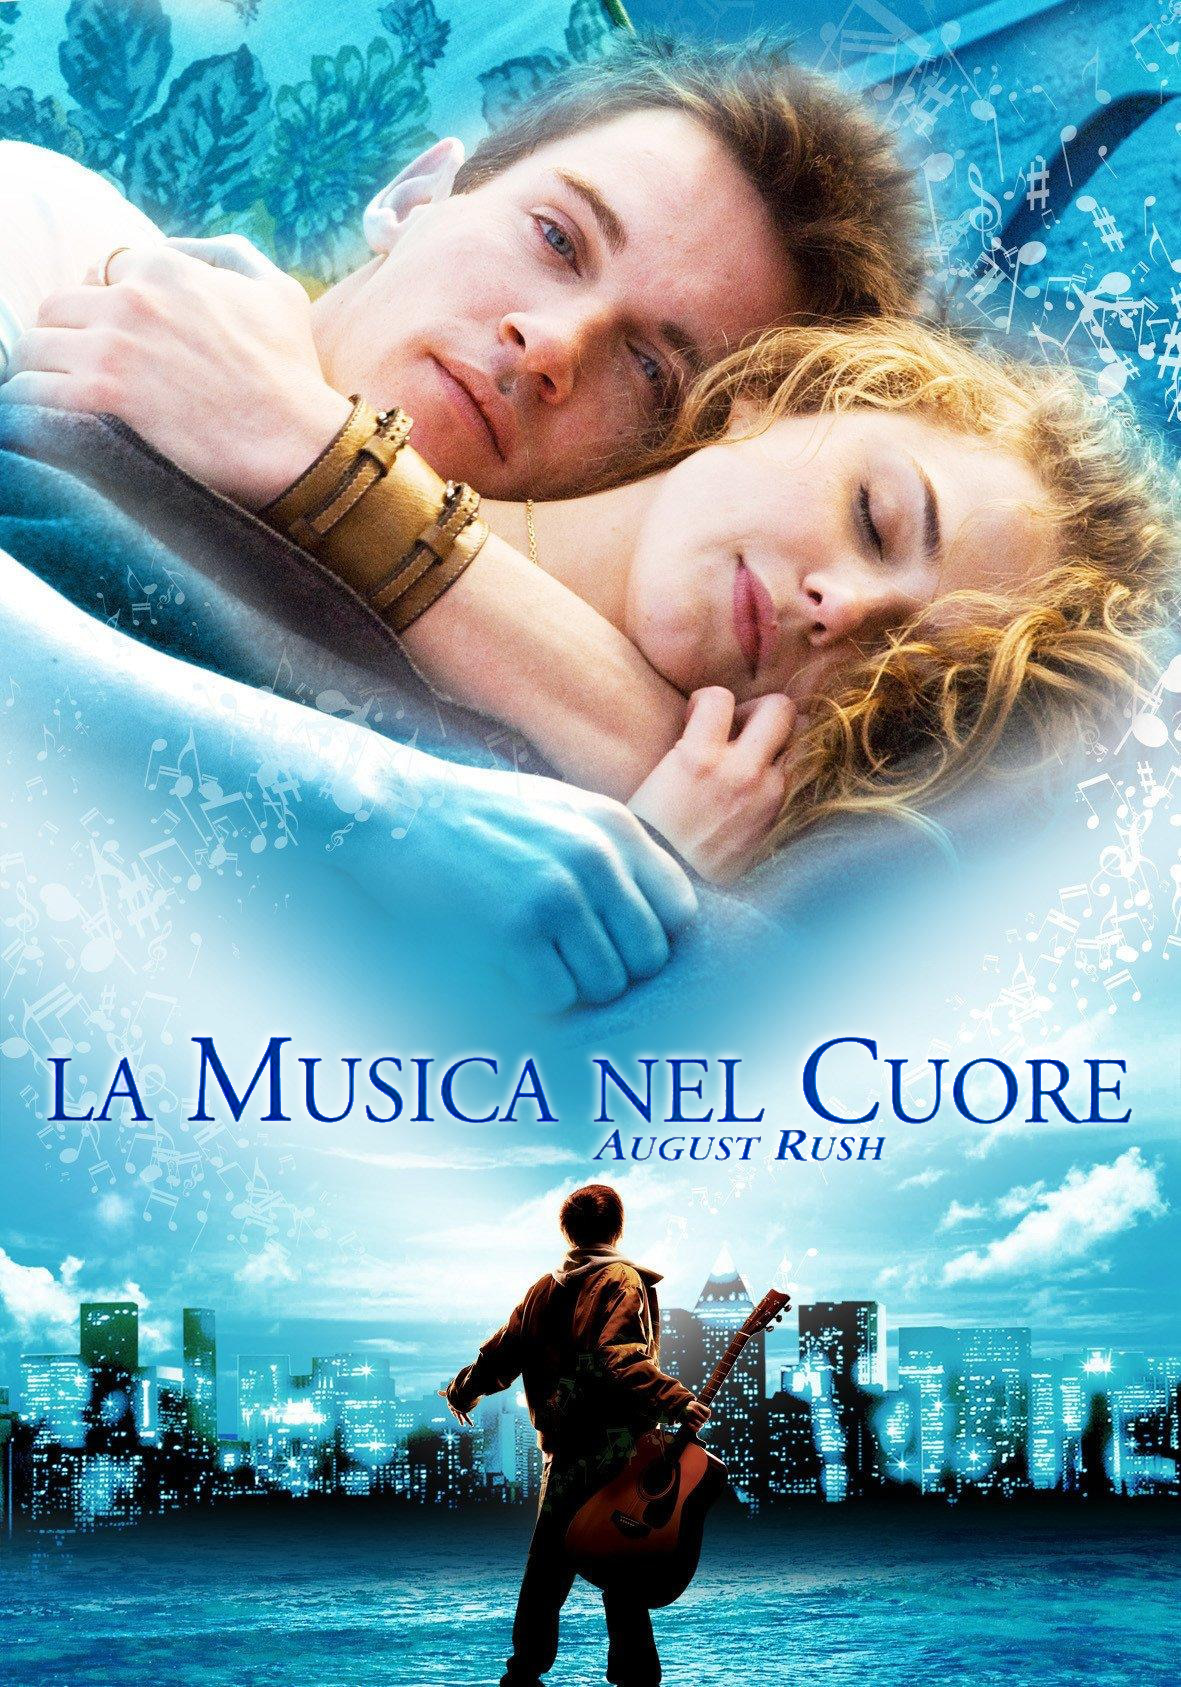 La musica nel cuore [HD] (2007)